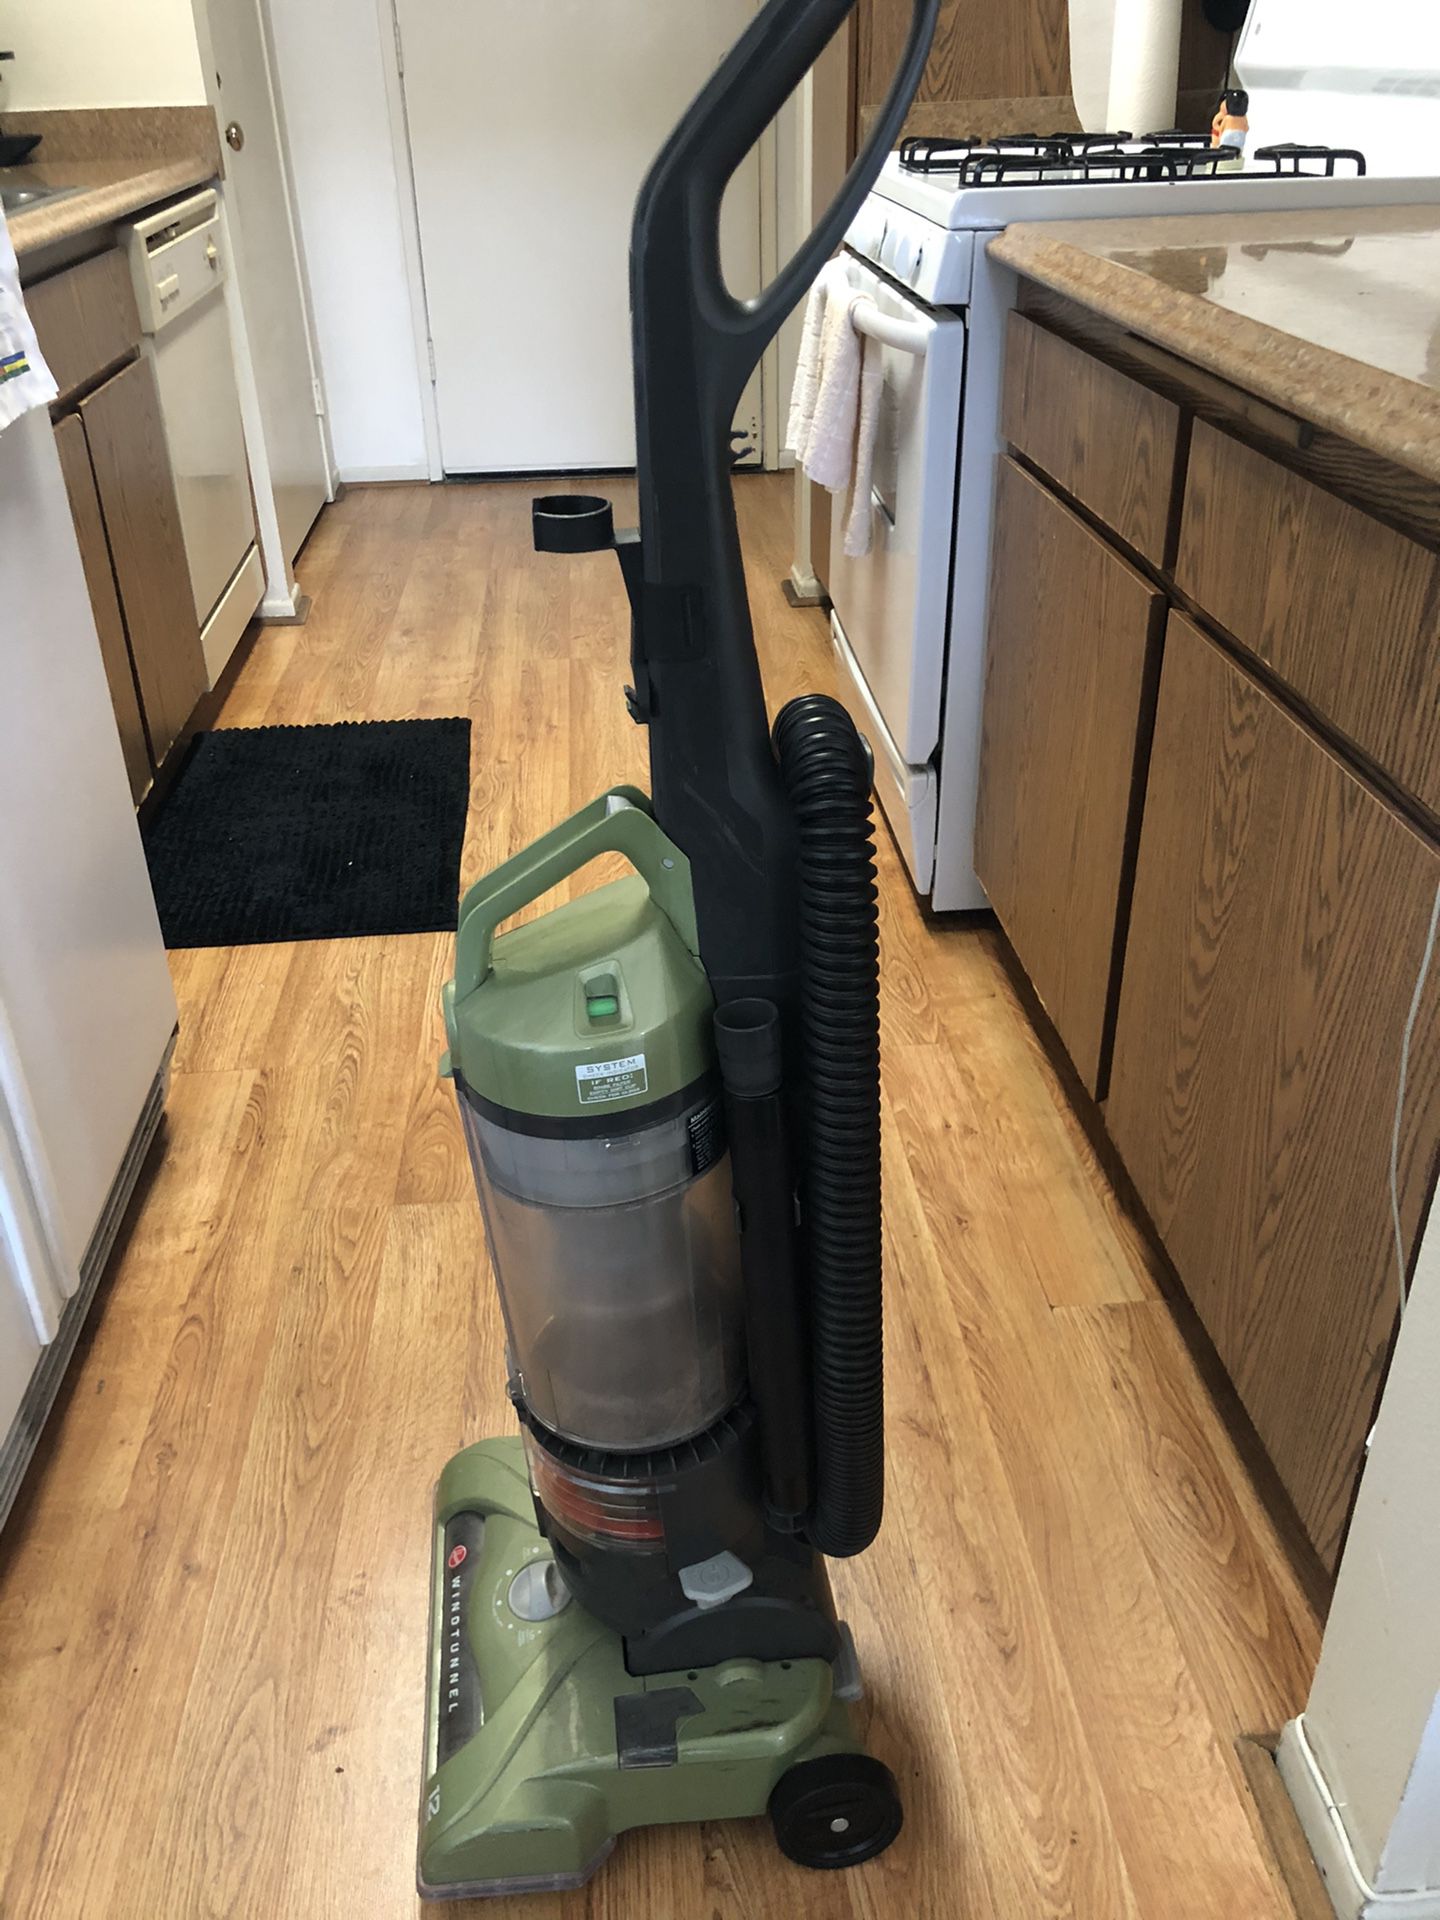 Vacuum for sale $25